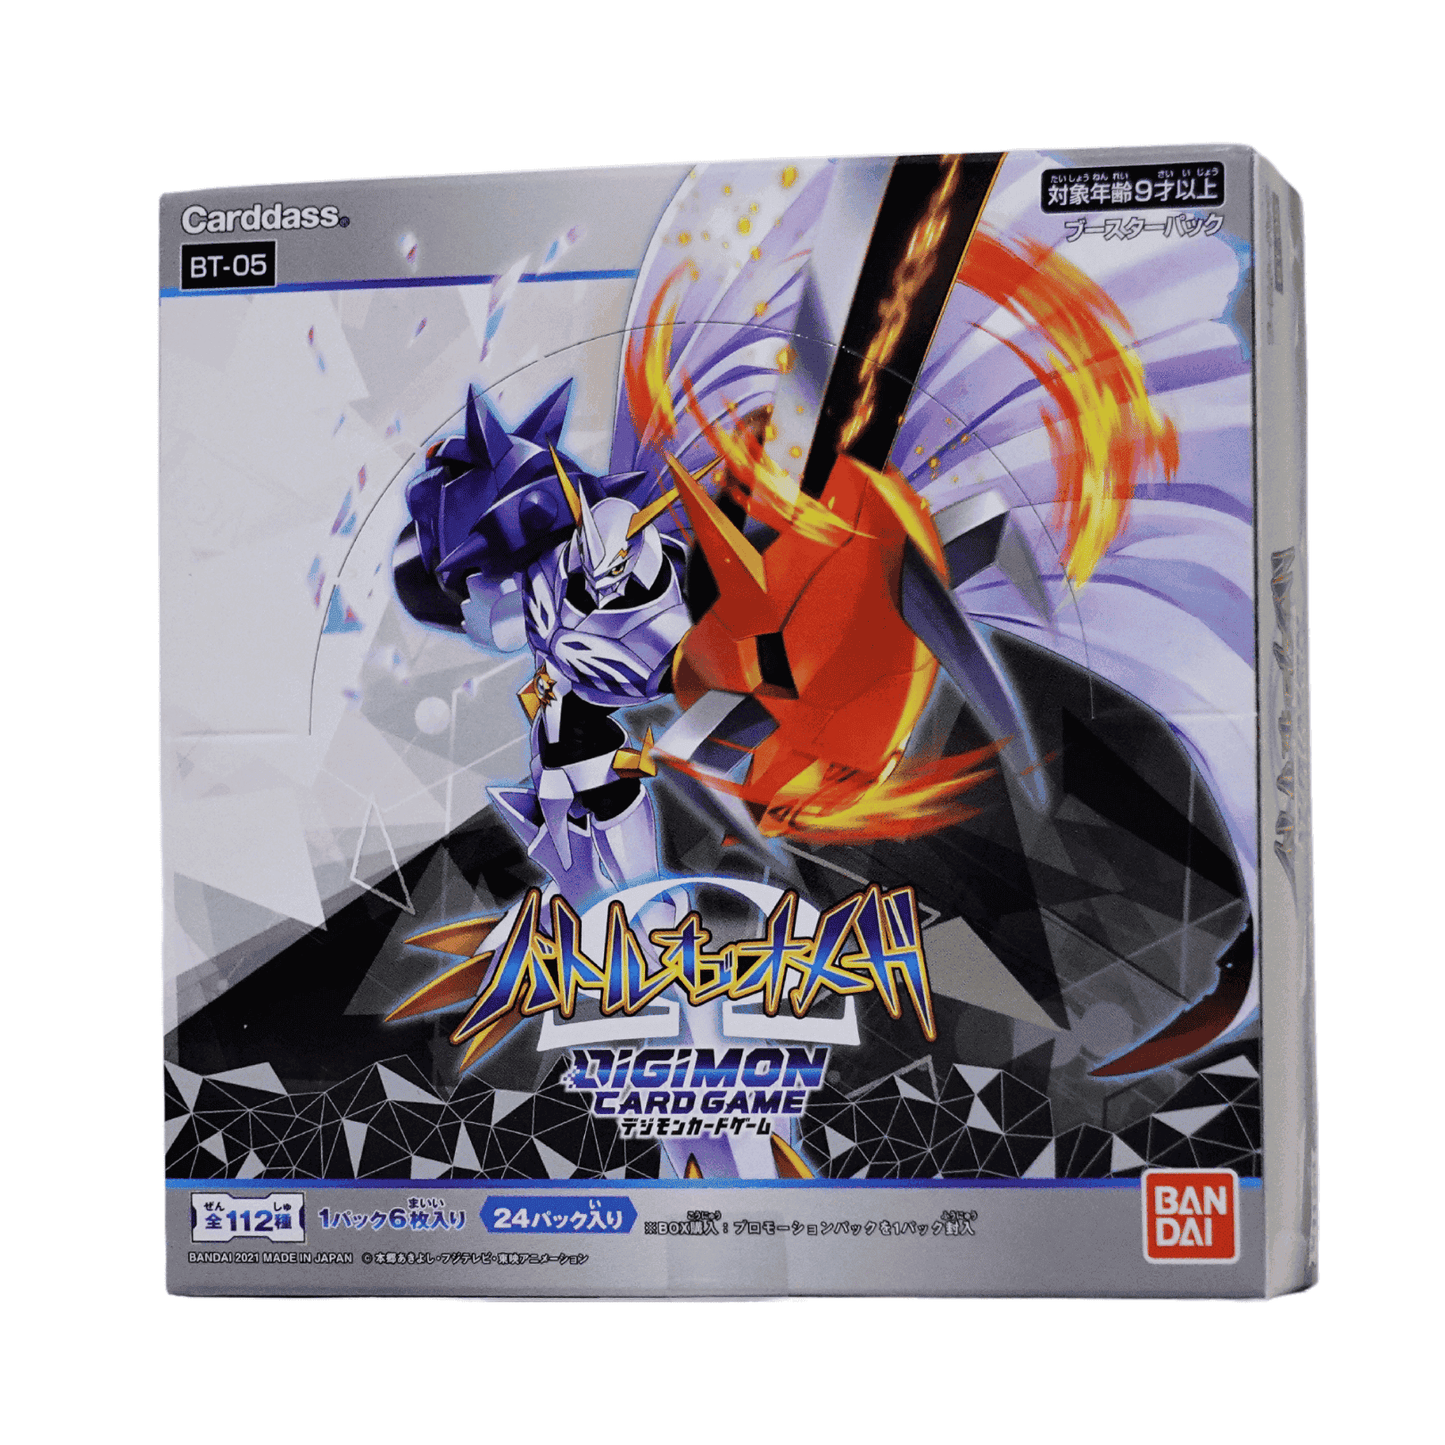 กล่องบูสเตอร์ Digimon Battle of Omega BT-05 ChitoroShop